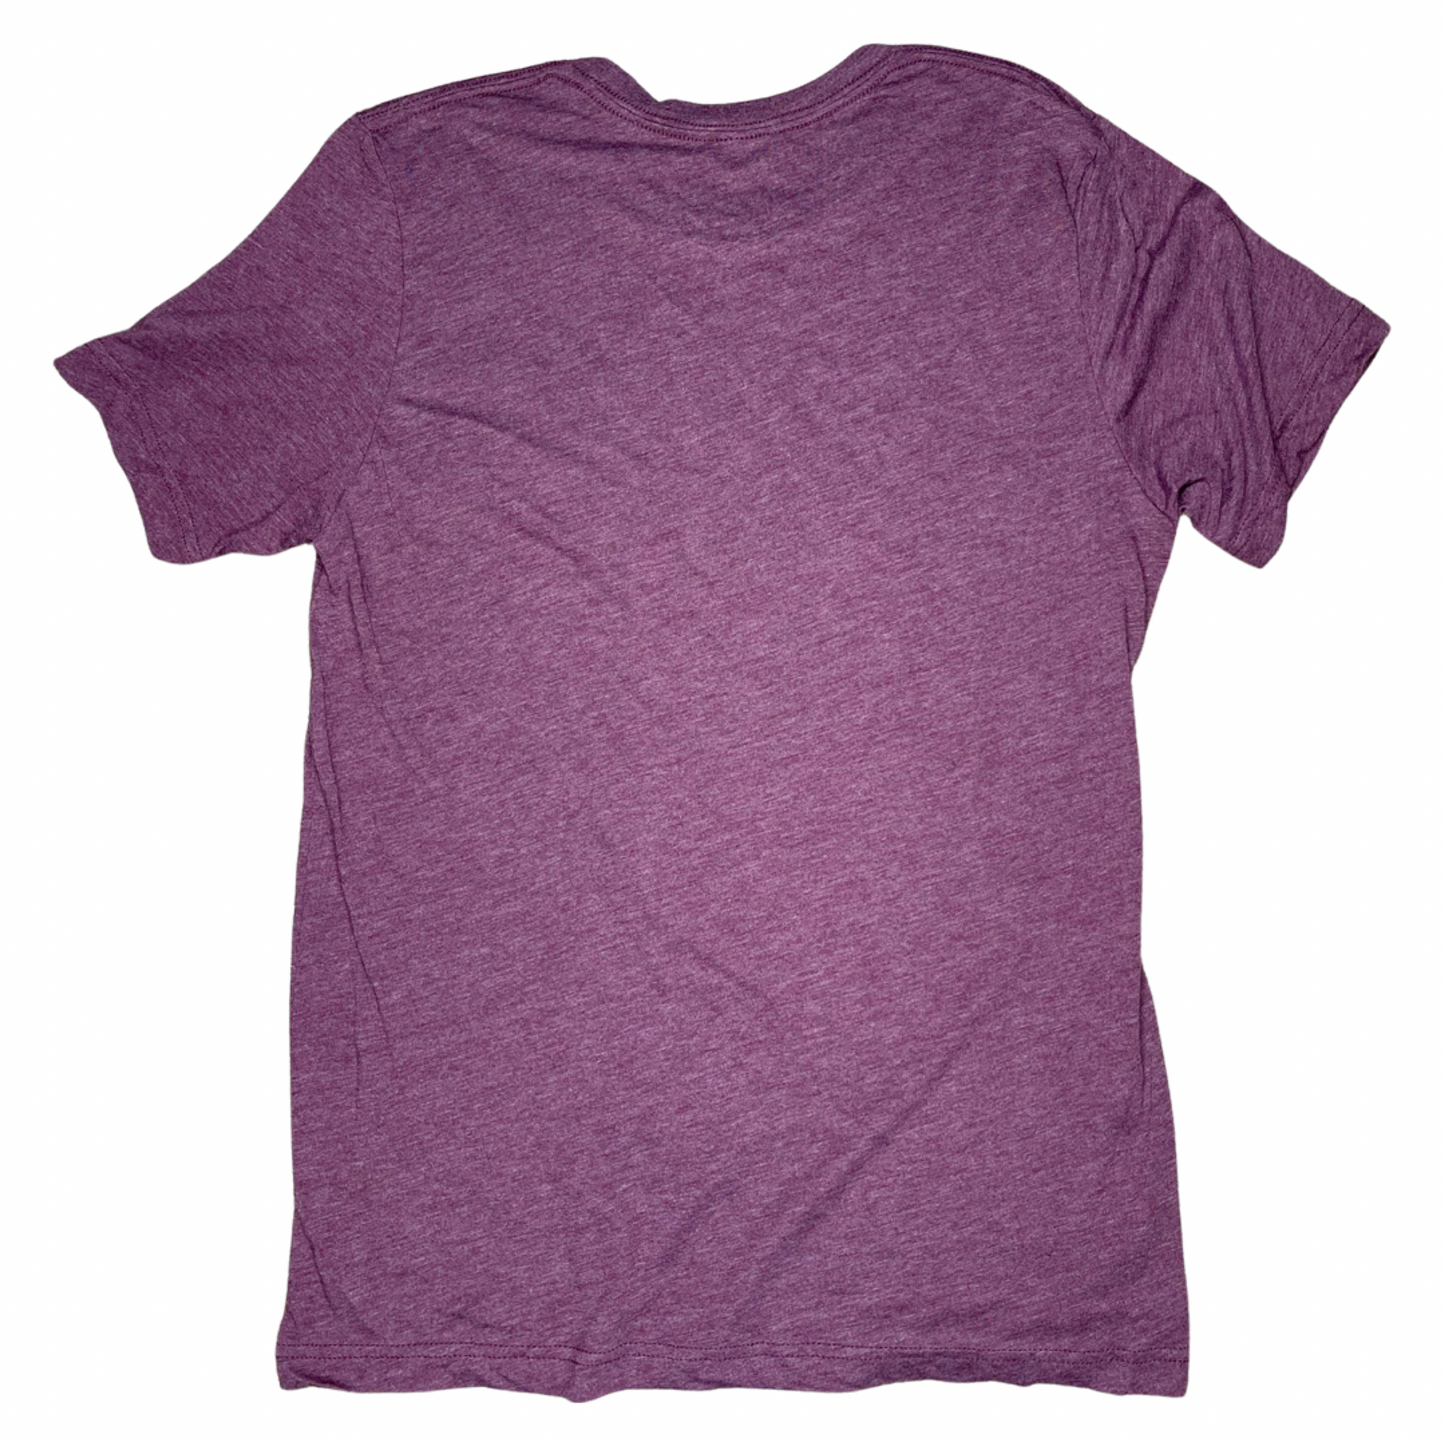 Vixere Triblend Unisex T-Shirt